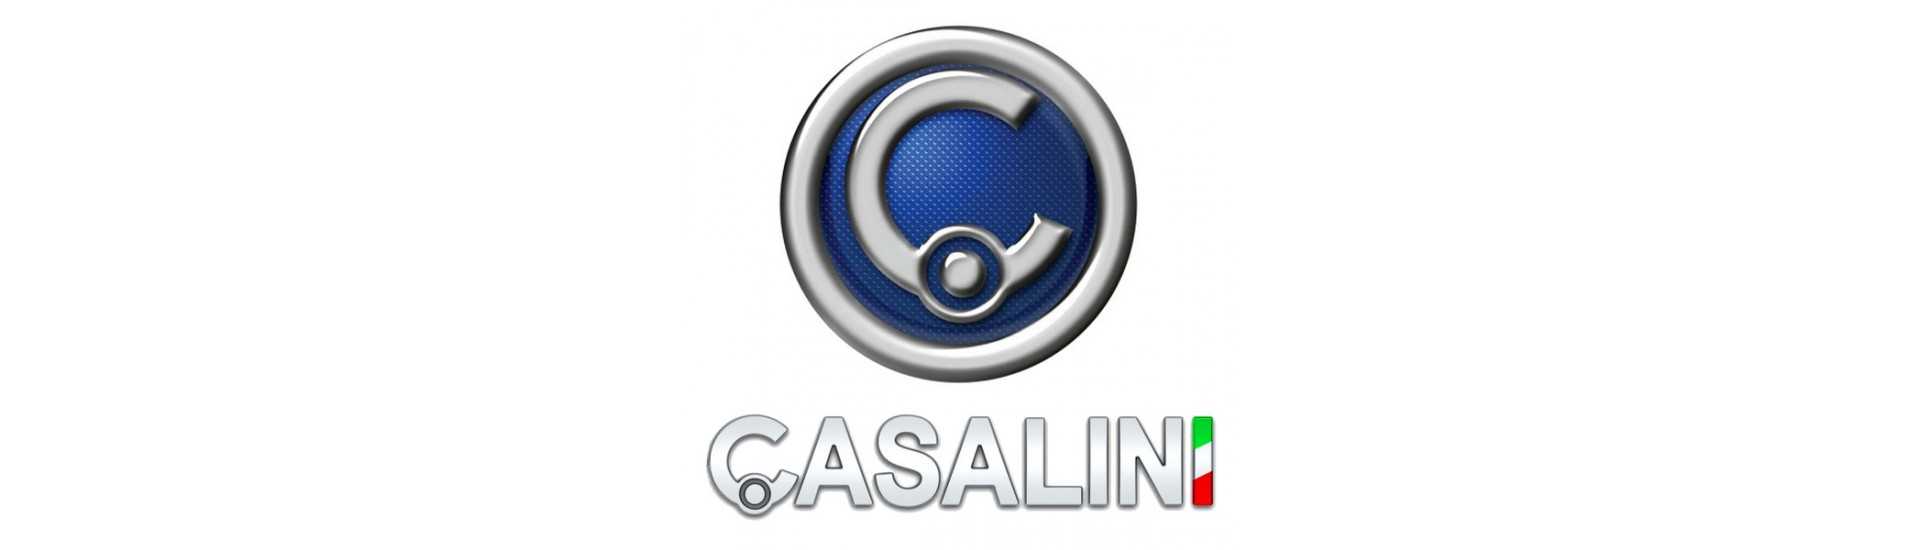 Cubo da porta ao melhor preço para o carro sem uma permissão Casalini